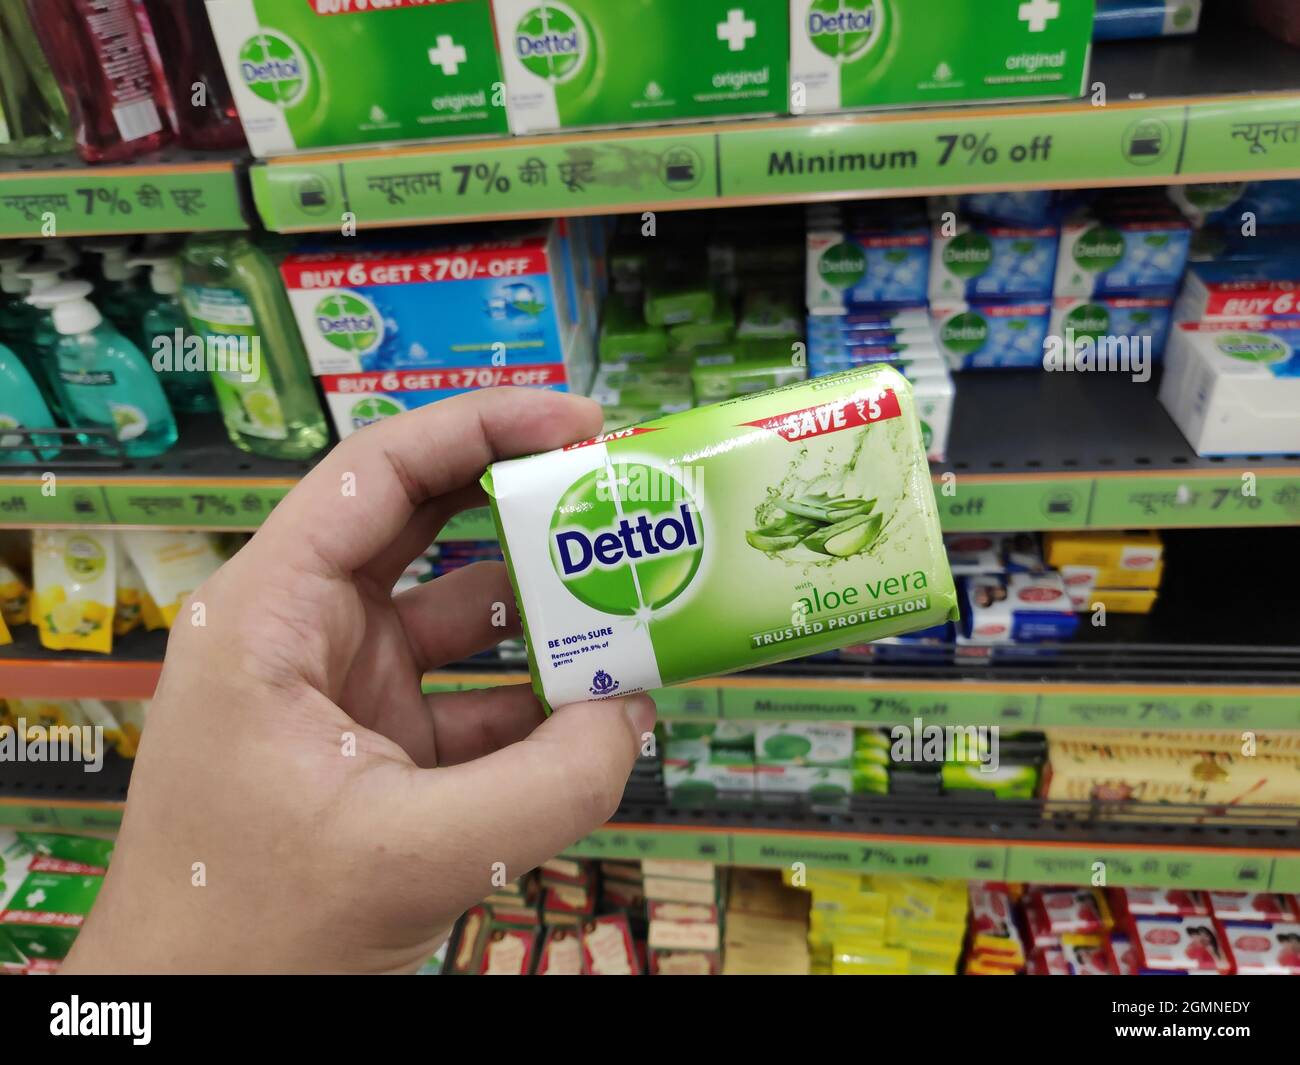 New Delhi, Inde - 20 avril 2020 : savon Dettol en main au centre  commercial, savon antiseptique Dettol Photo Stock - Alamy